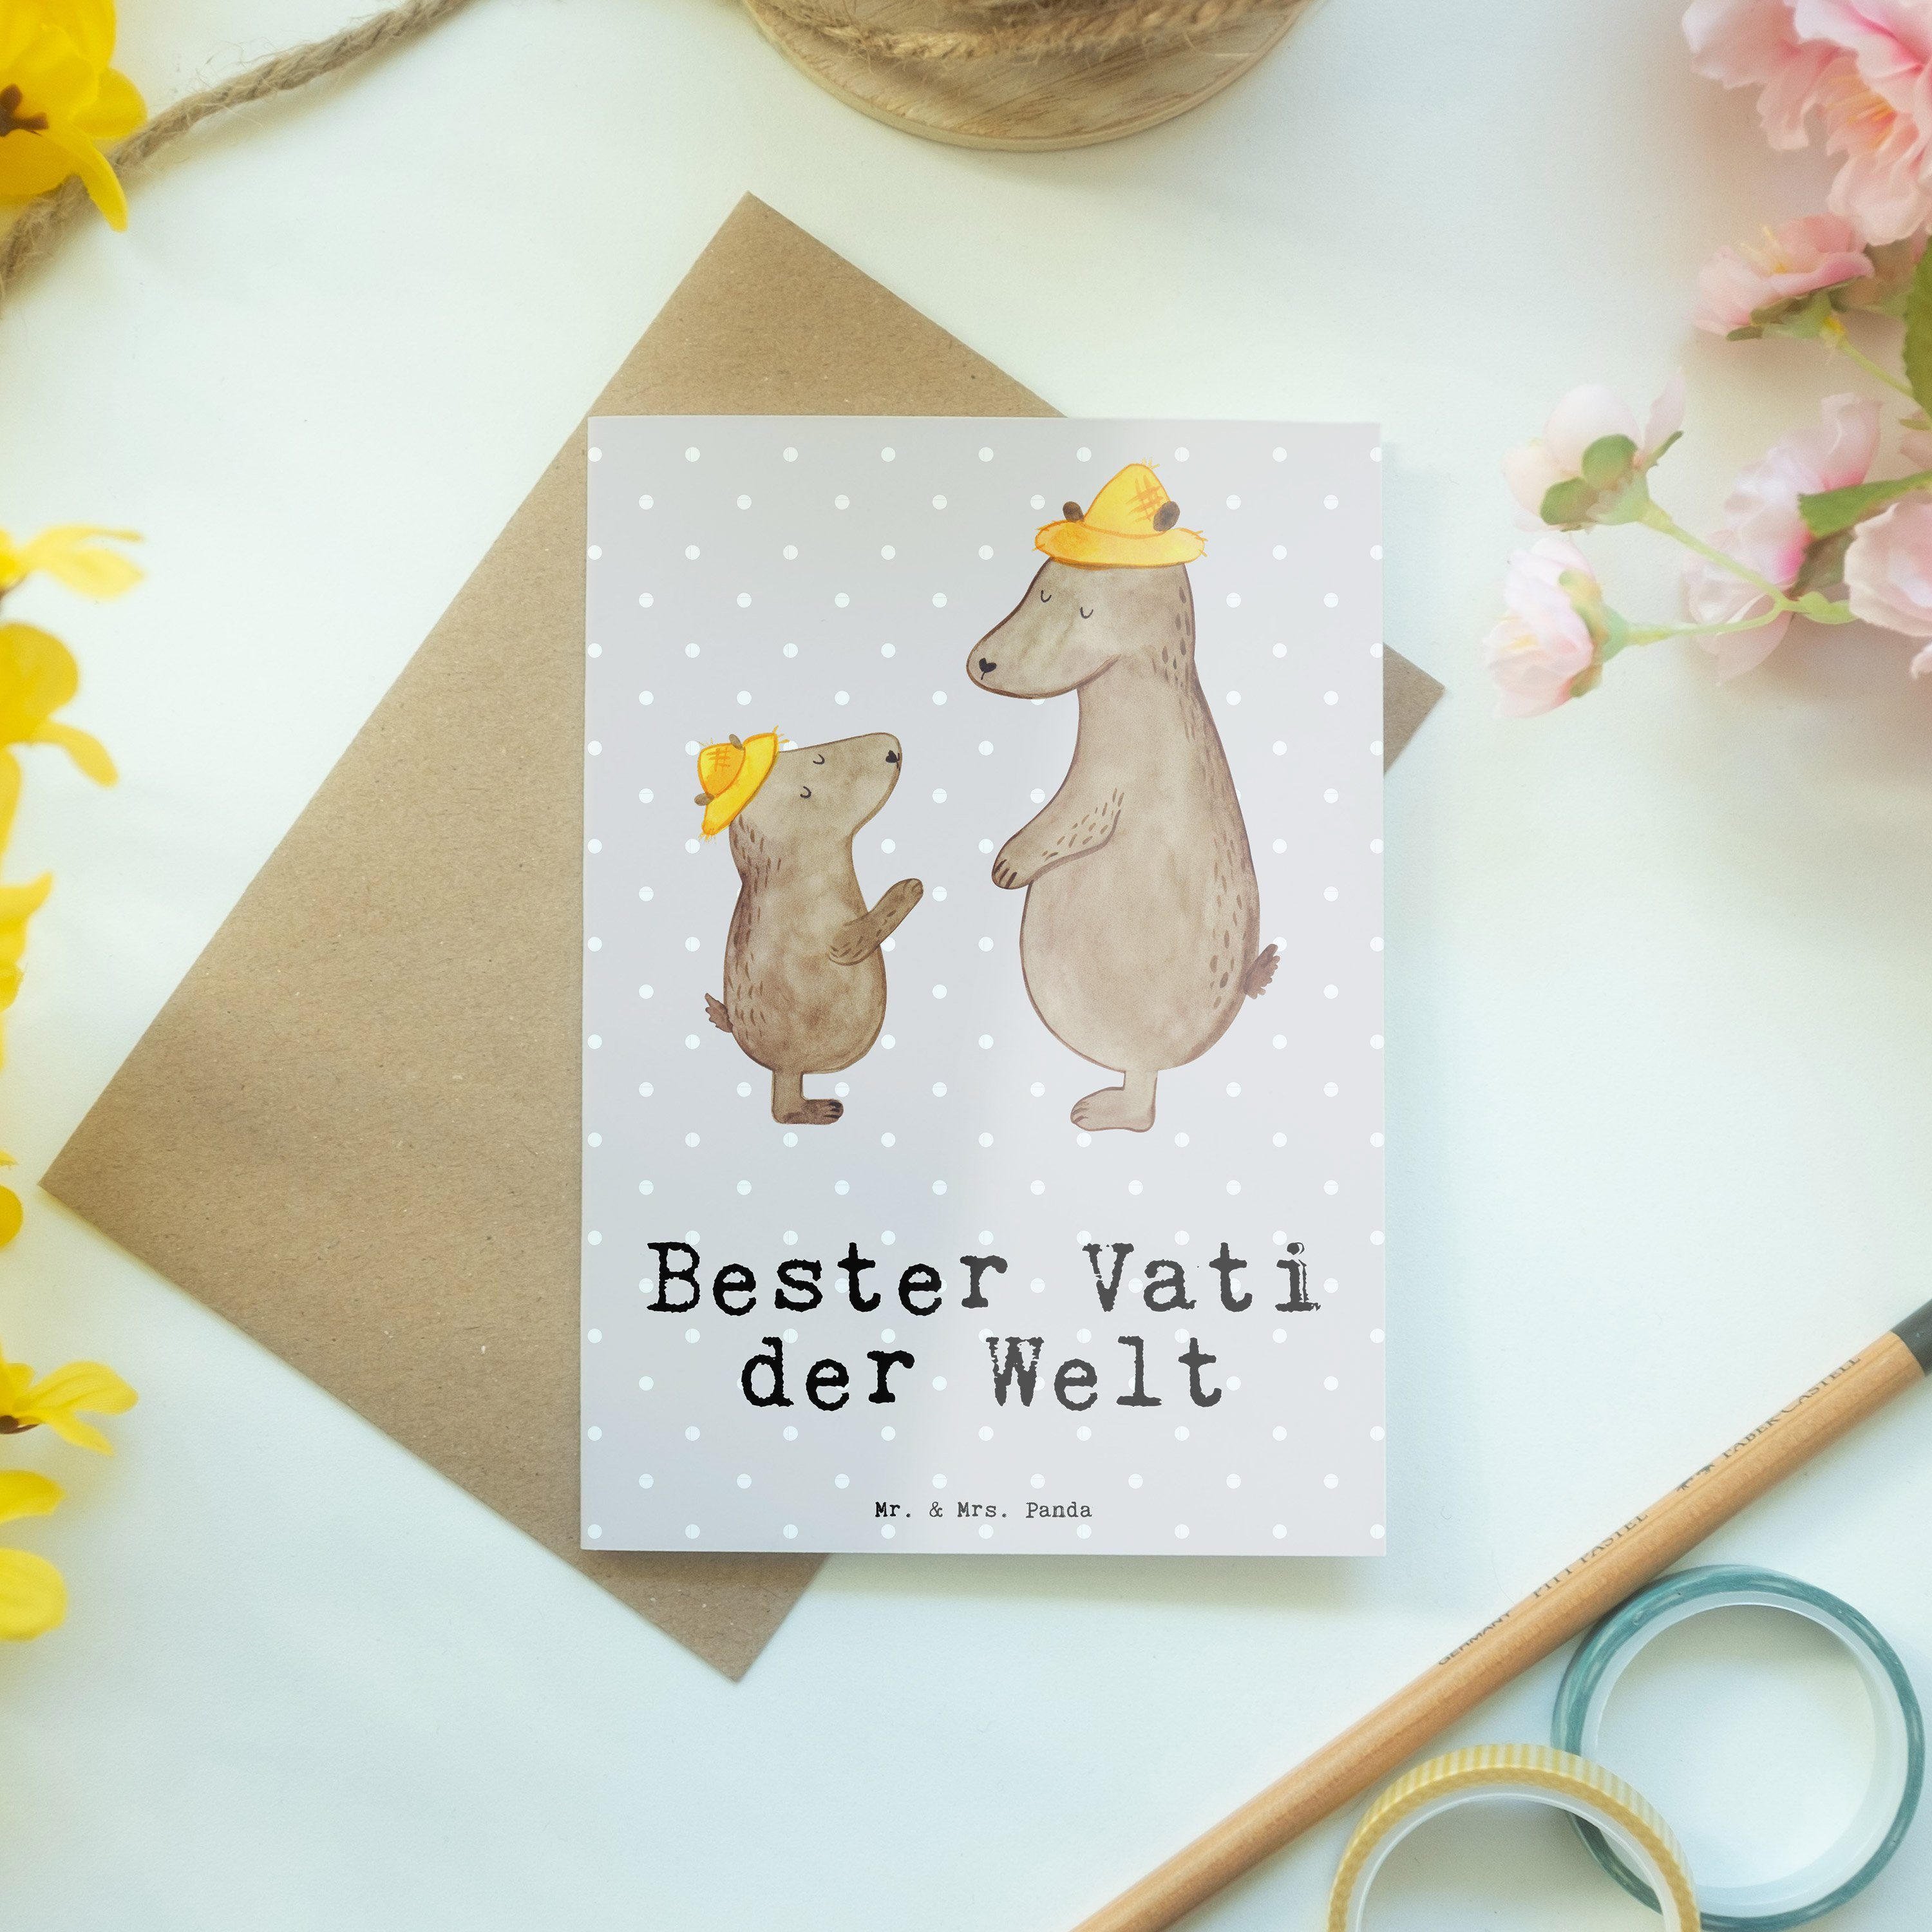 Mr. & Mrs. Panda Grußkarte Welt Grau Famil Geschenk, der Bester - Vati Bär Dankeschön, Pastell 